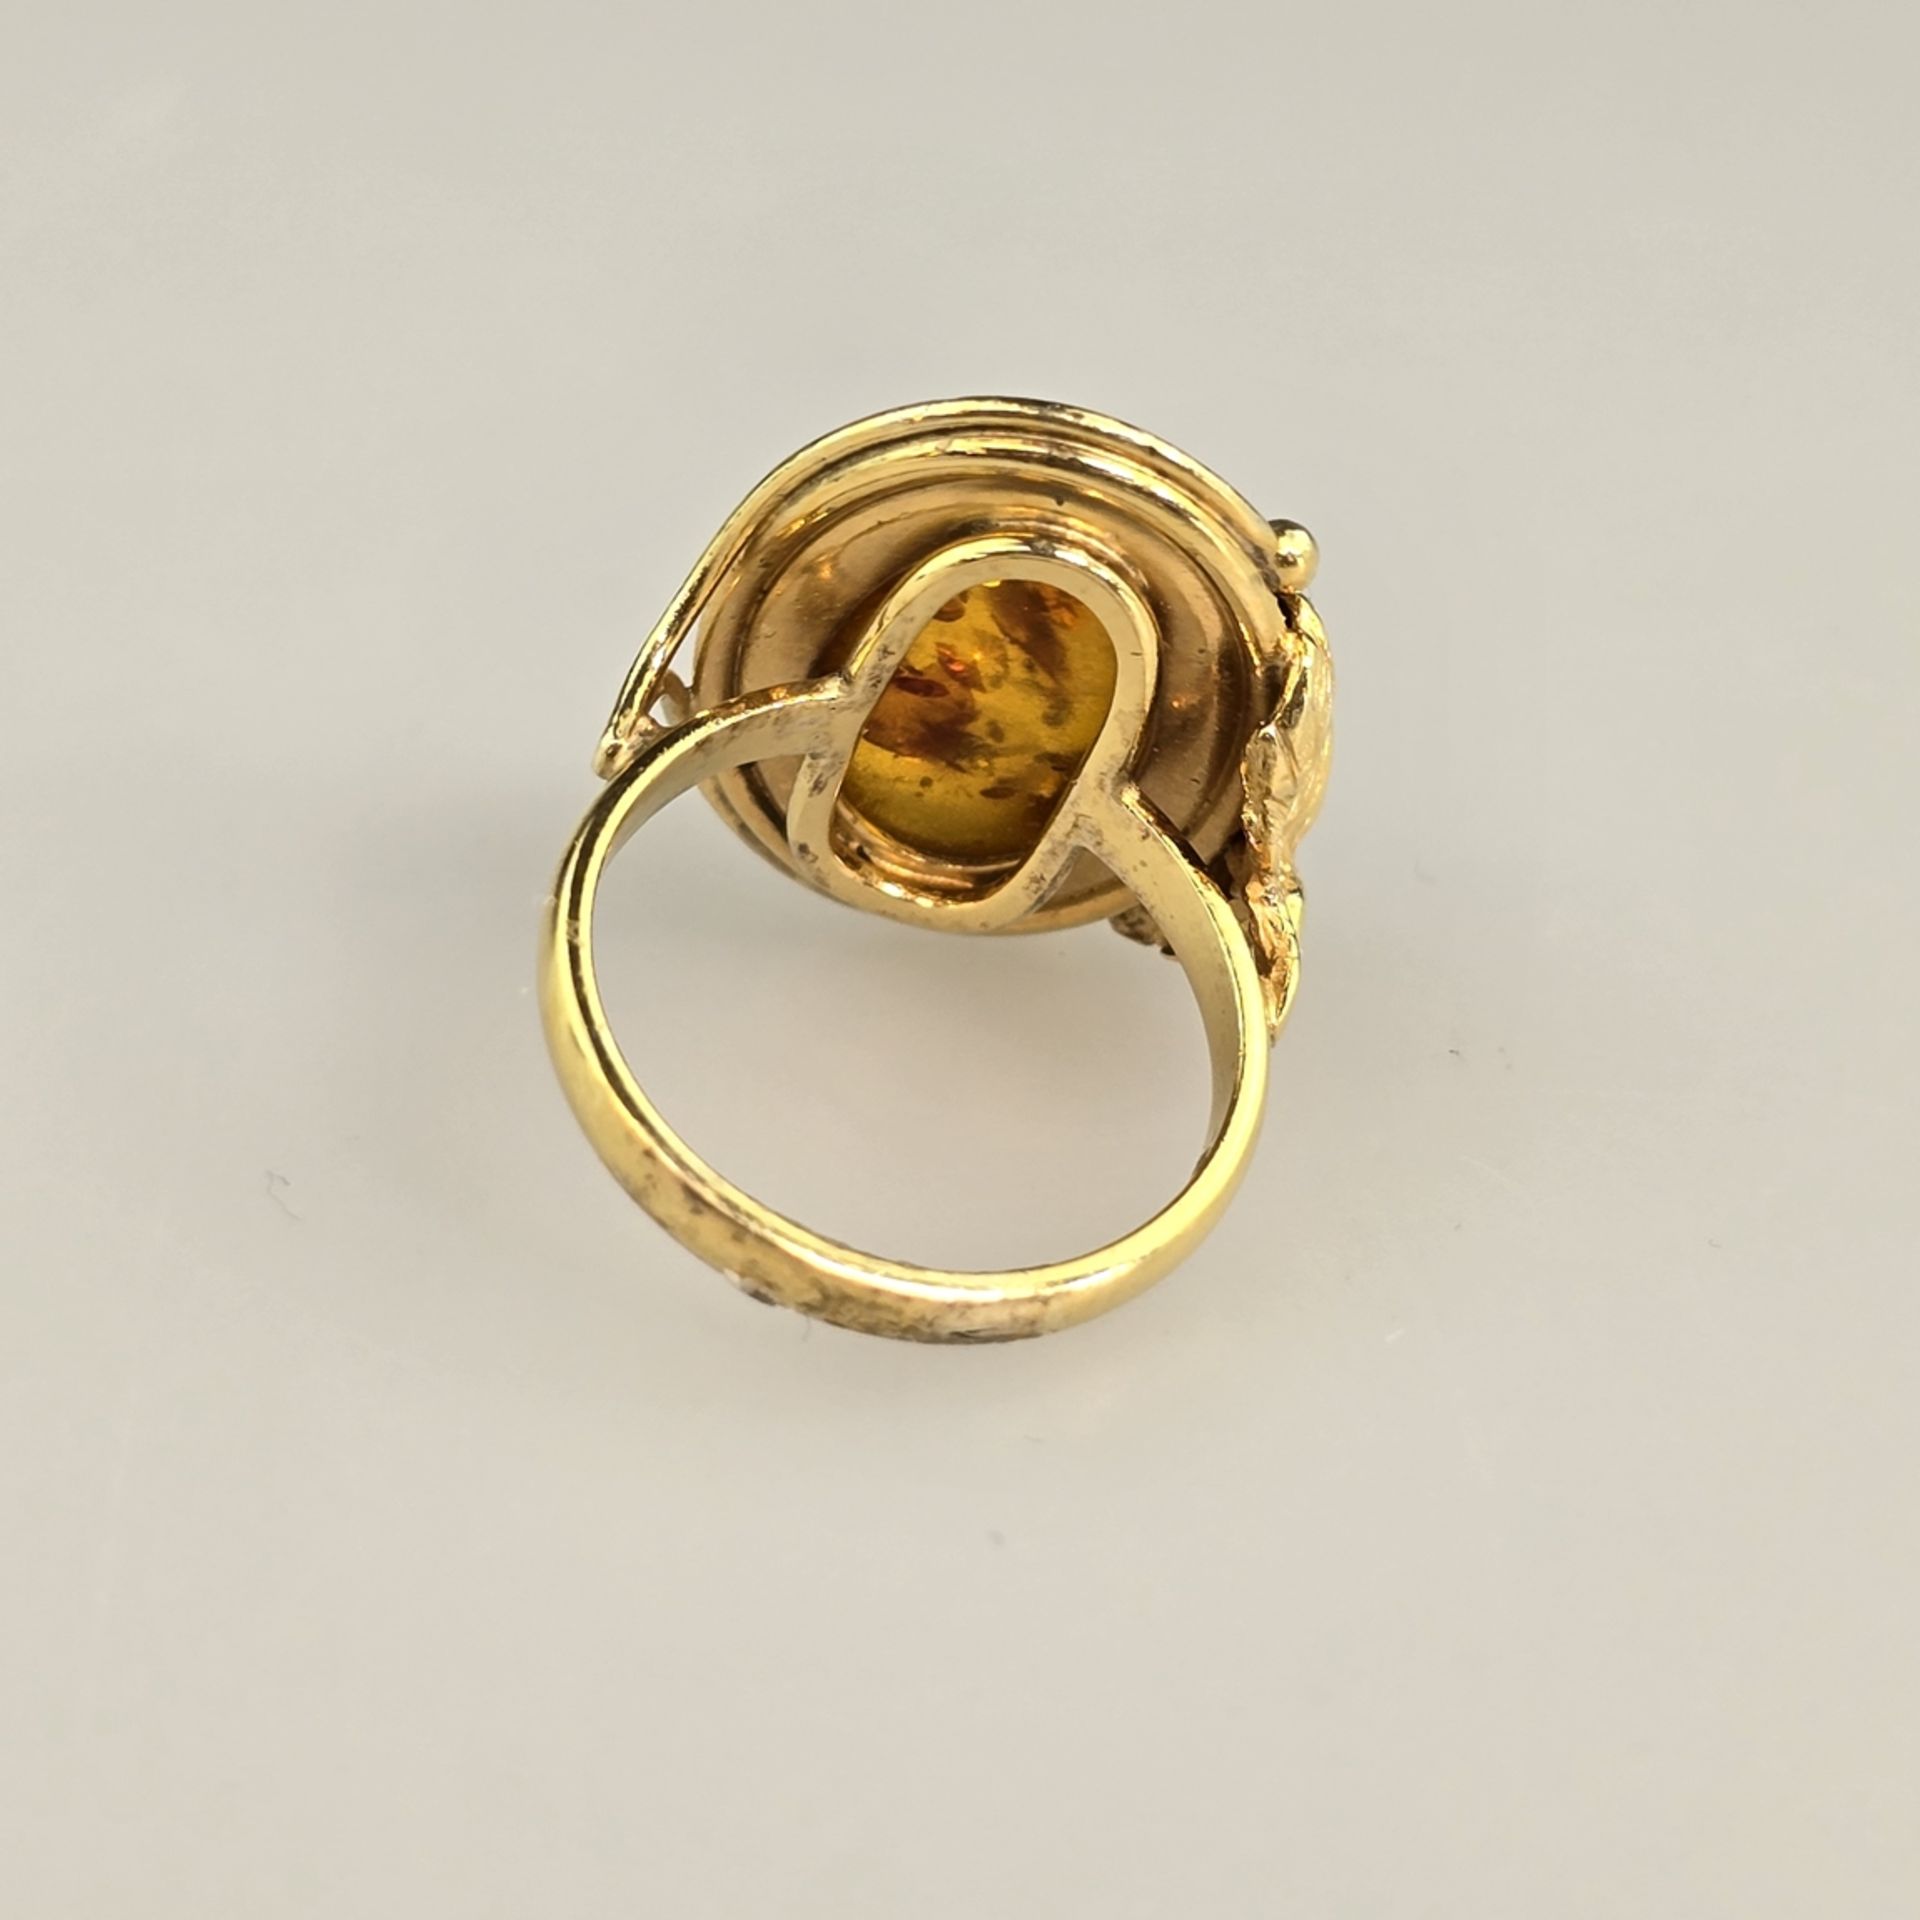 Bernsteinring - Silber 925/000, vergoldet, außen gestempelt, Bernstein von ca.18 x 12 mm, Ringgröße - Bild 7 aus 8